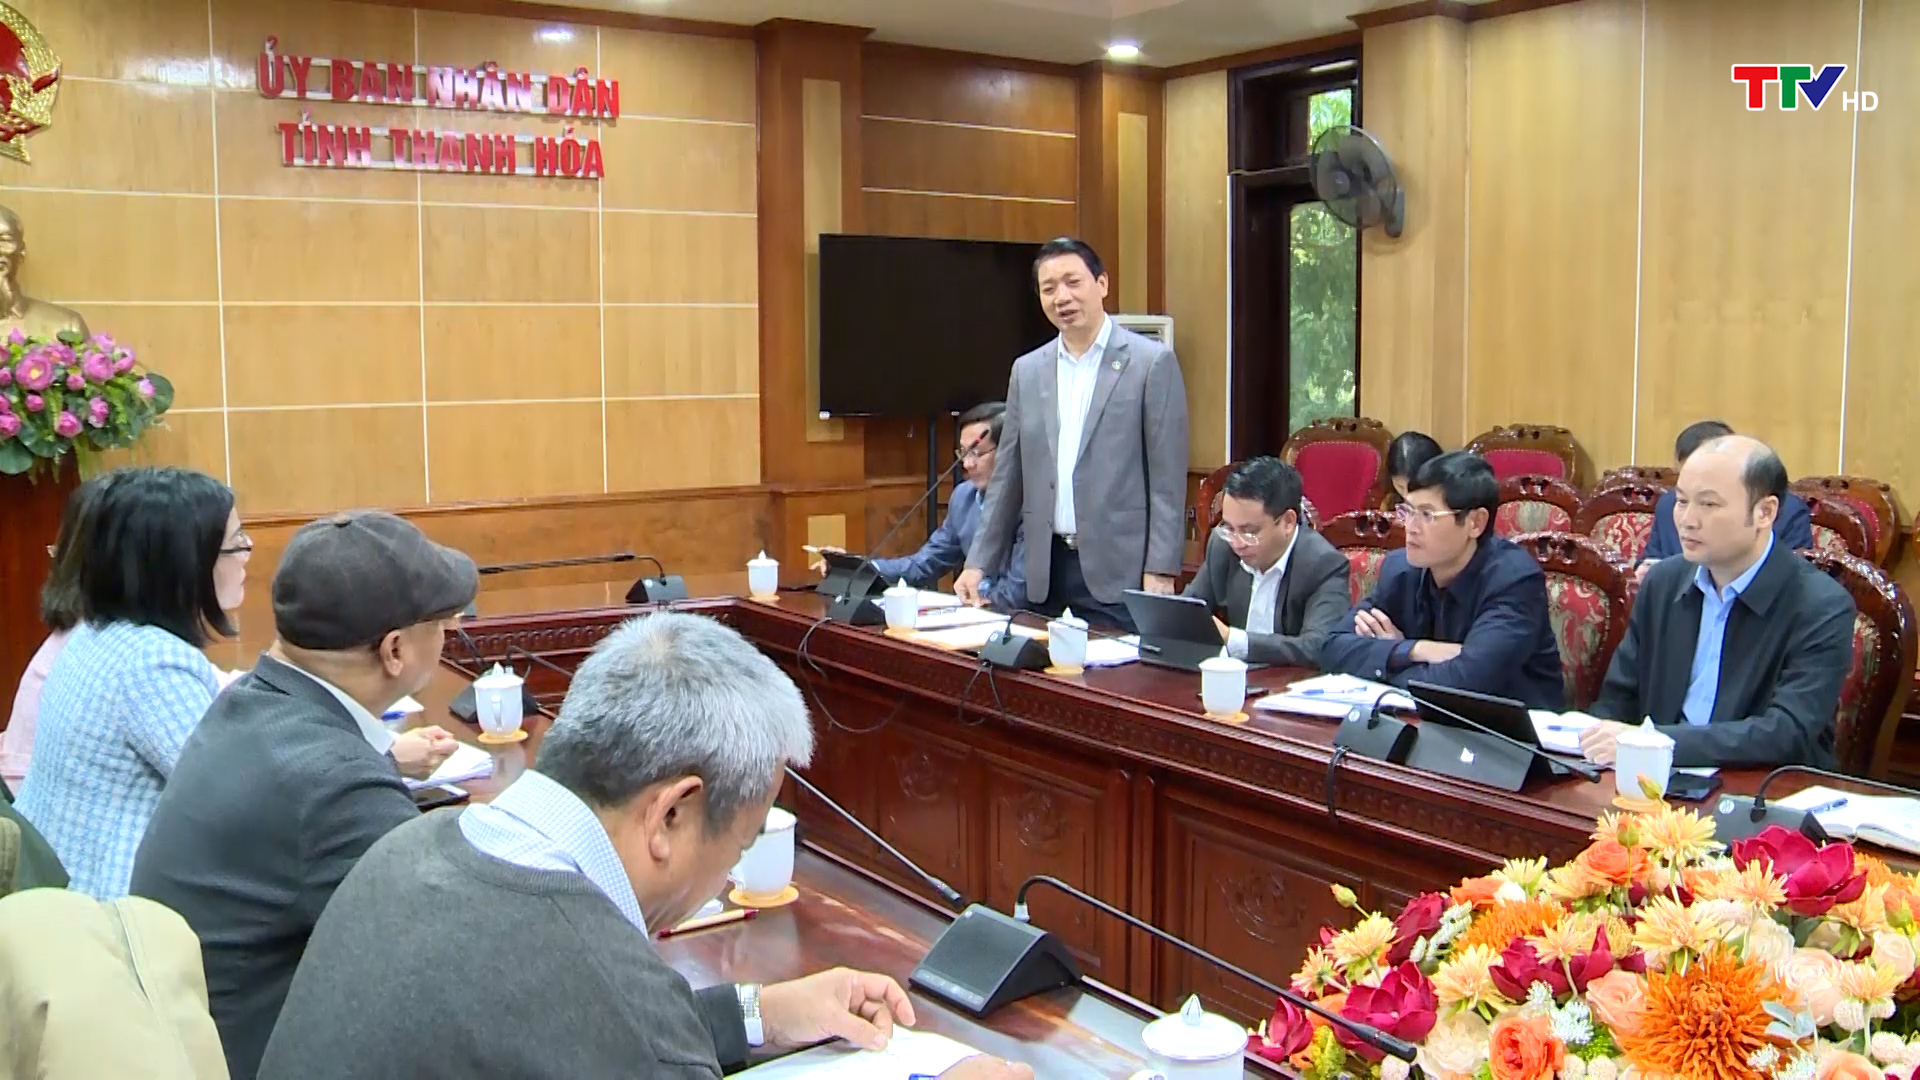 Phó Chủ tịch UBND tỉnh Lê Đức Giang làm việc với Đoàn thiết kế dự án IFAD - Ảnh 2.